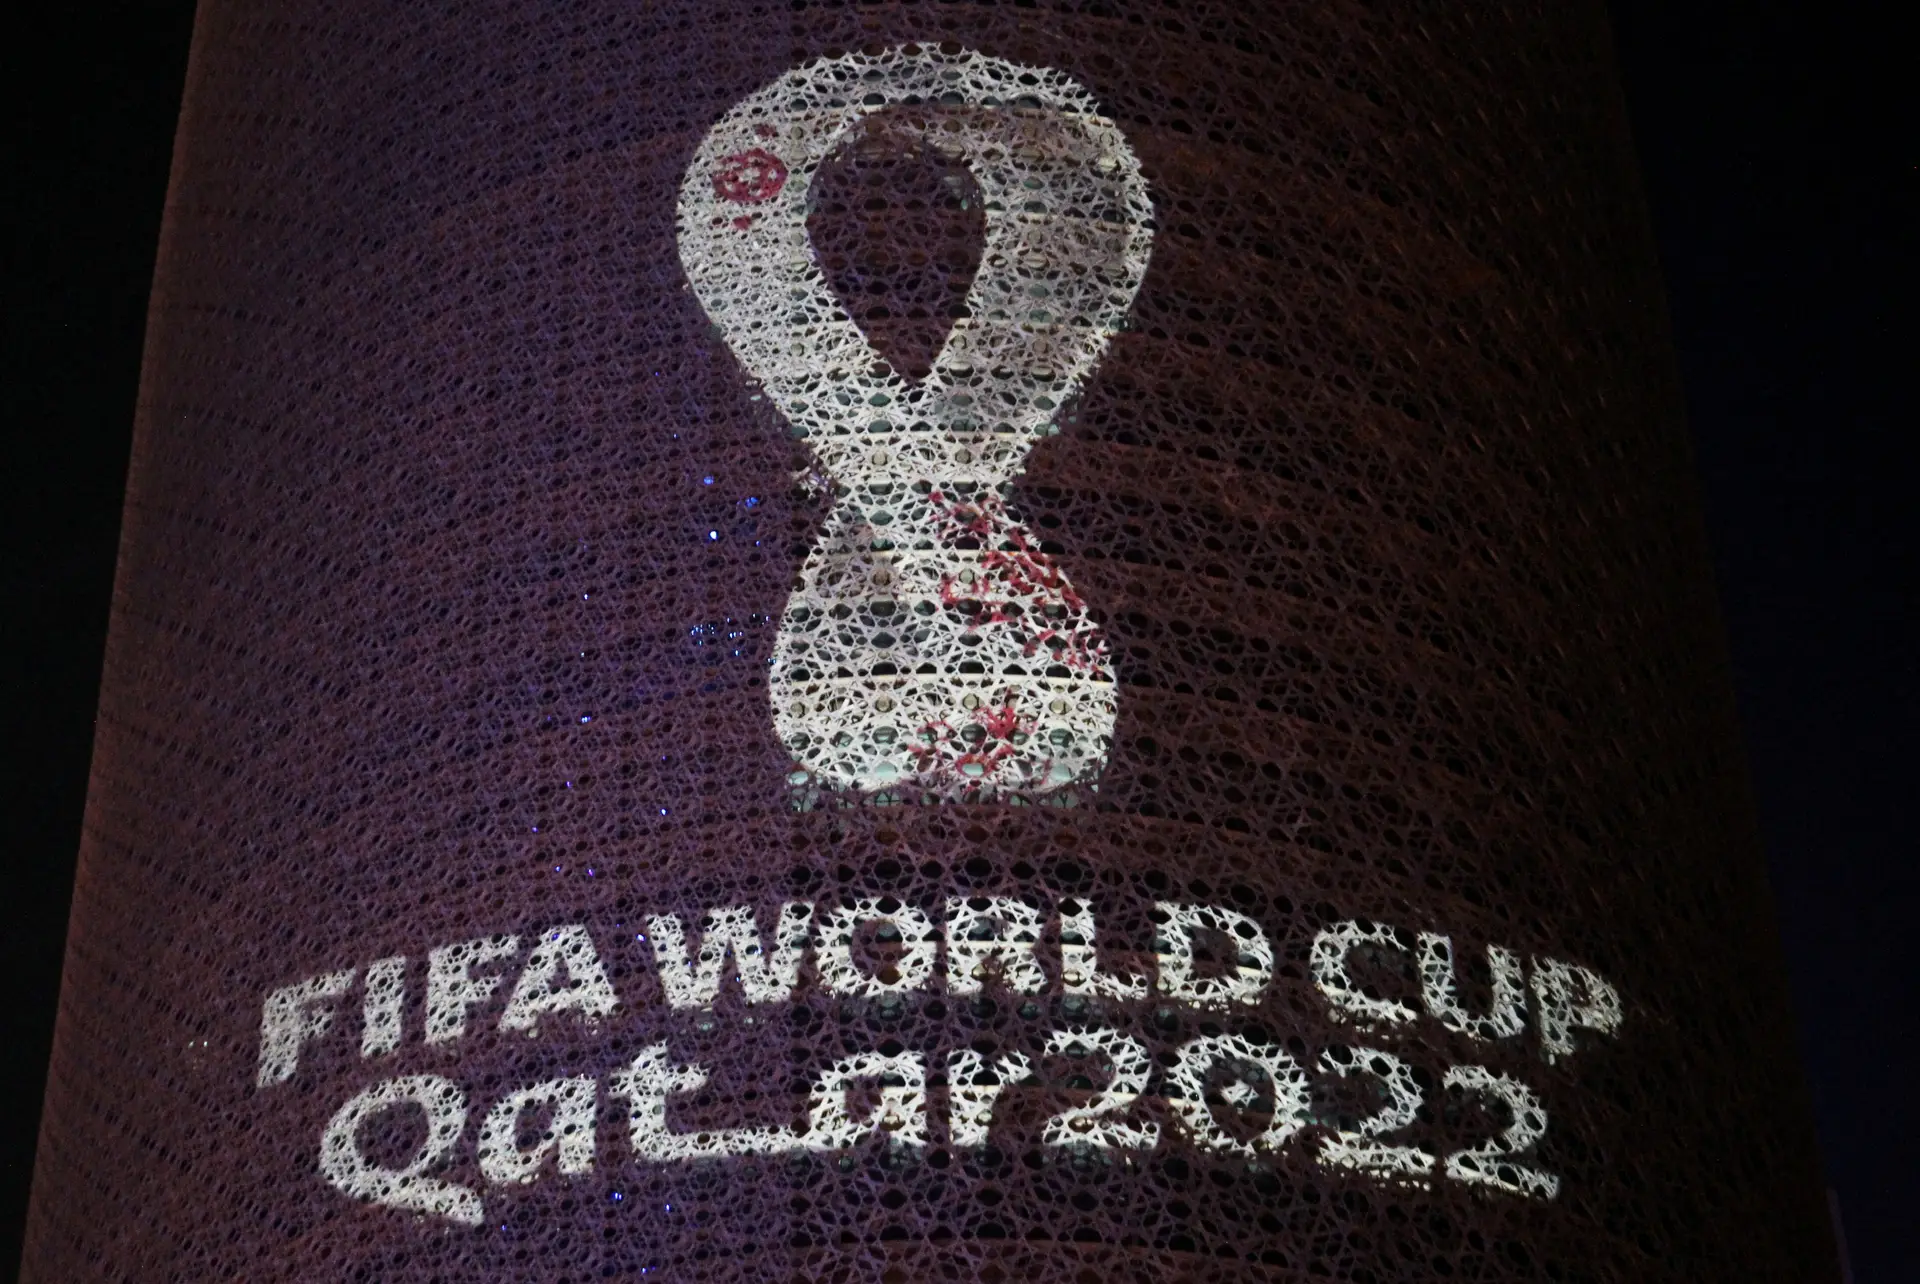 "Boicotem o Mundial do Qatar": o apelo às três principais figuras do Estado português